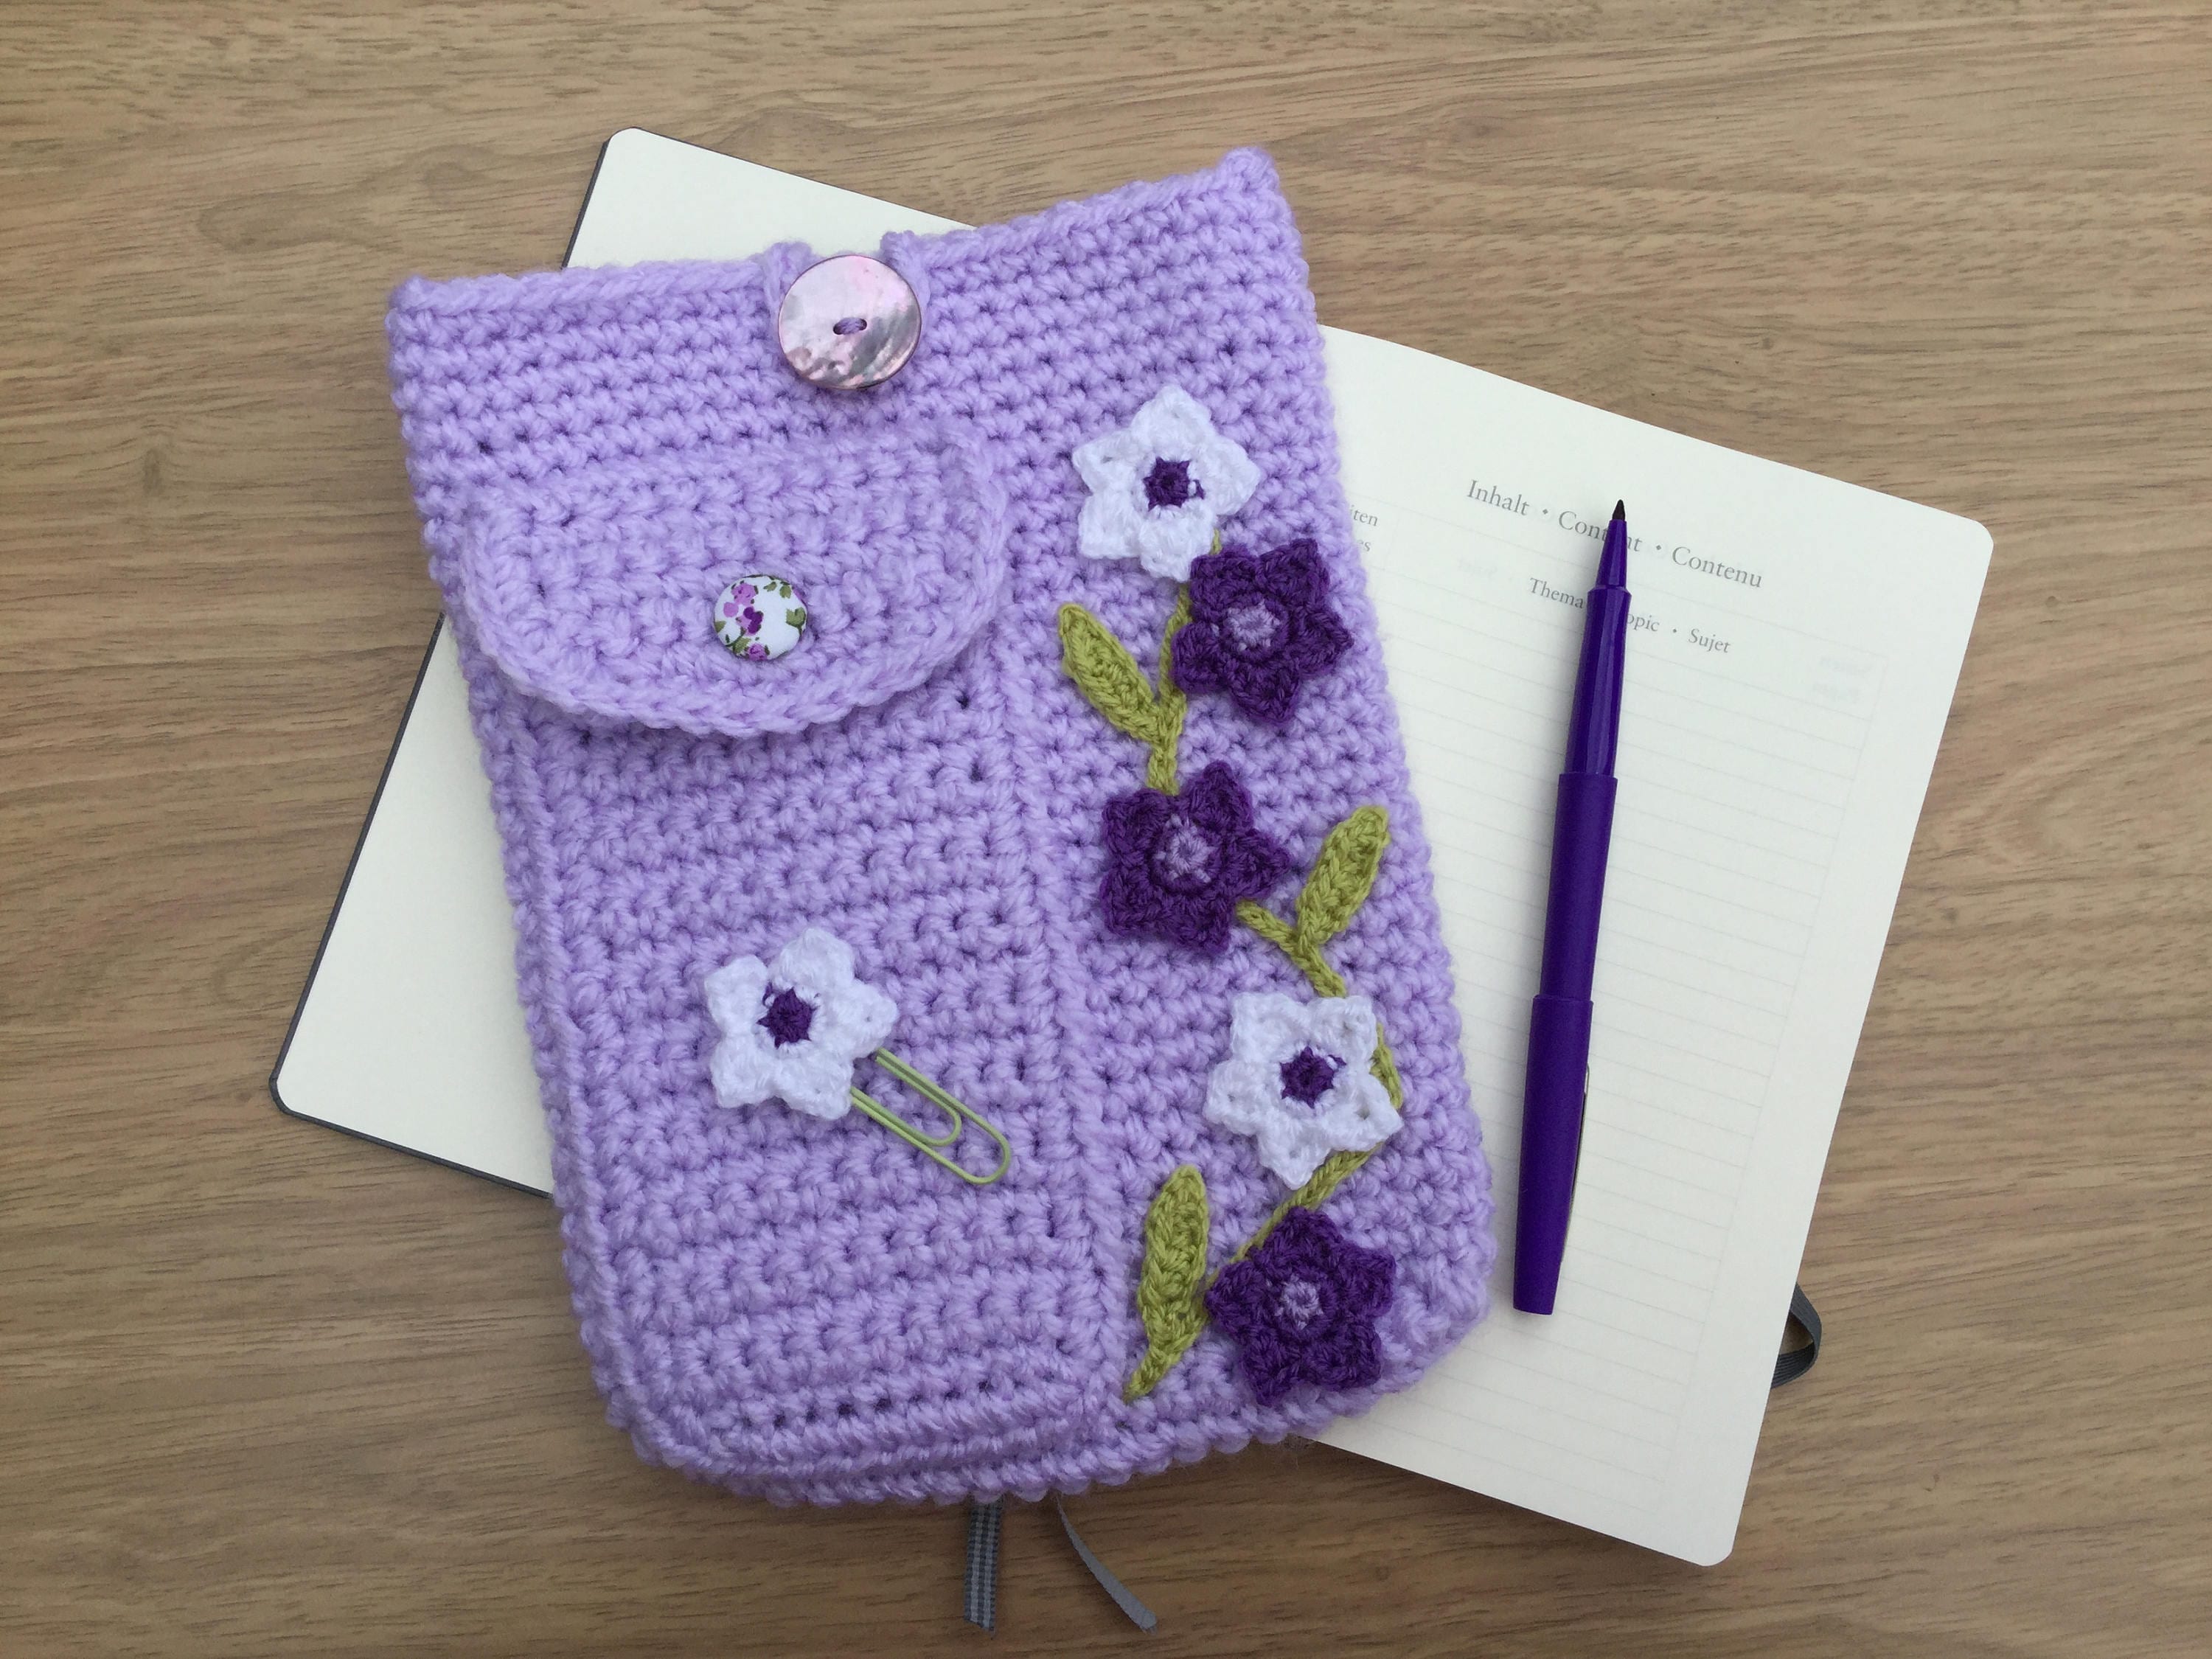 Crochet book case or calendar 